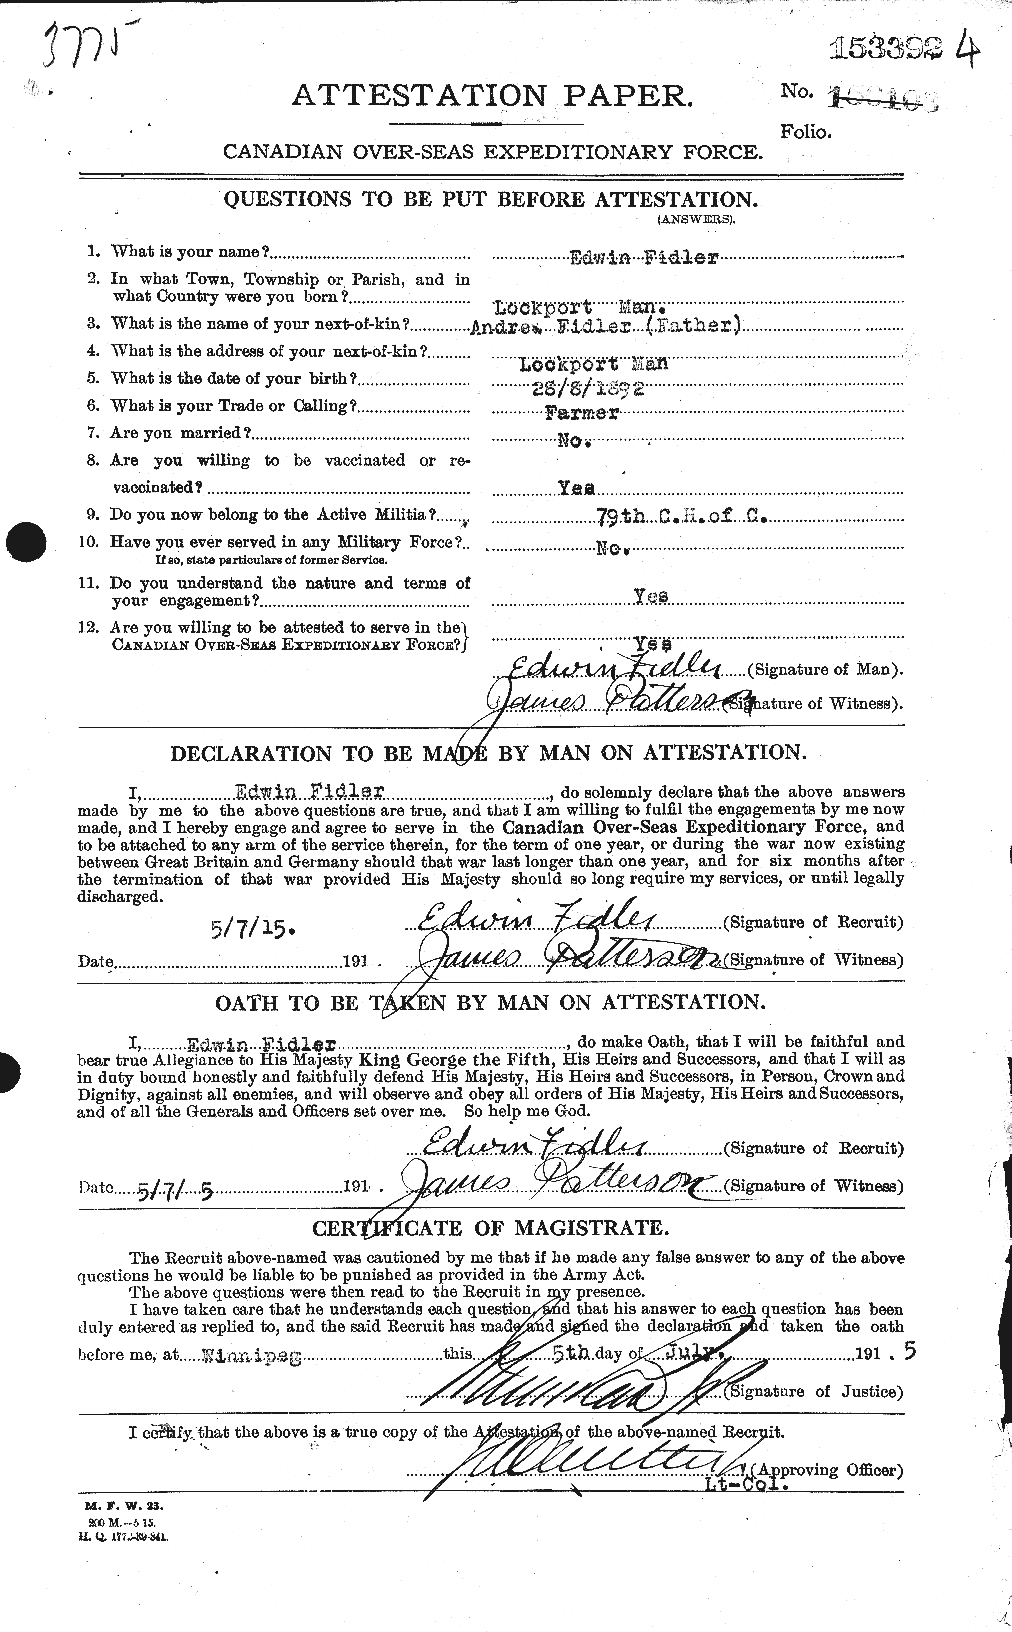 Dossiers du Personnel de la Première Guerre mondiale - CEC 322948a